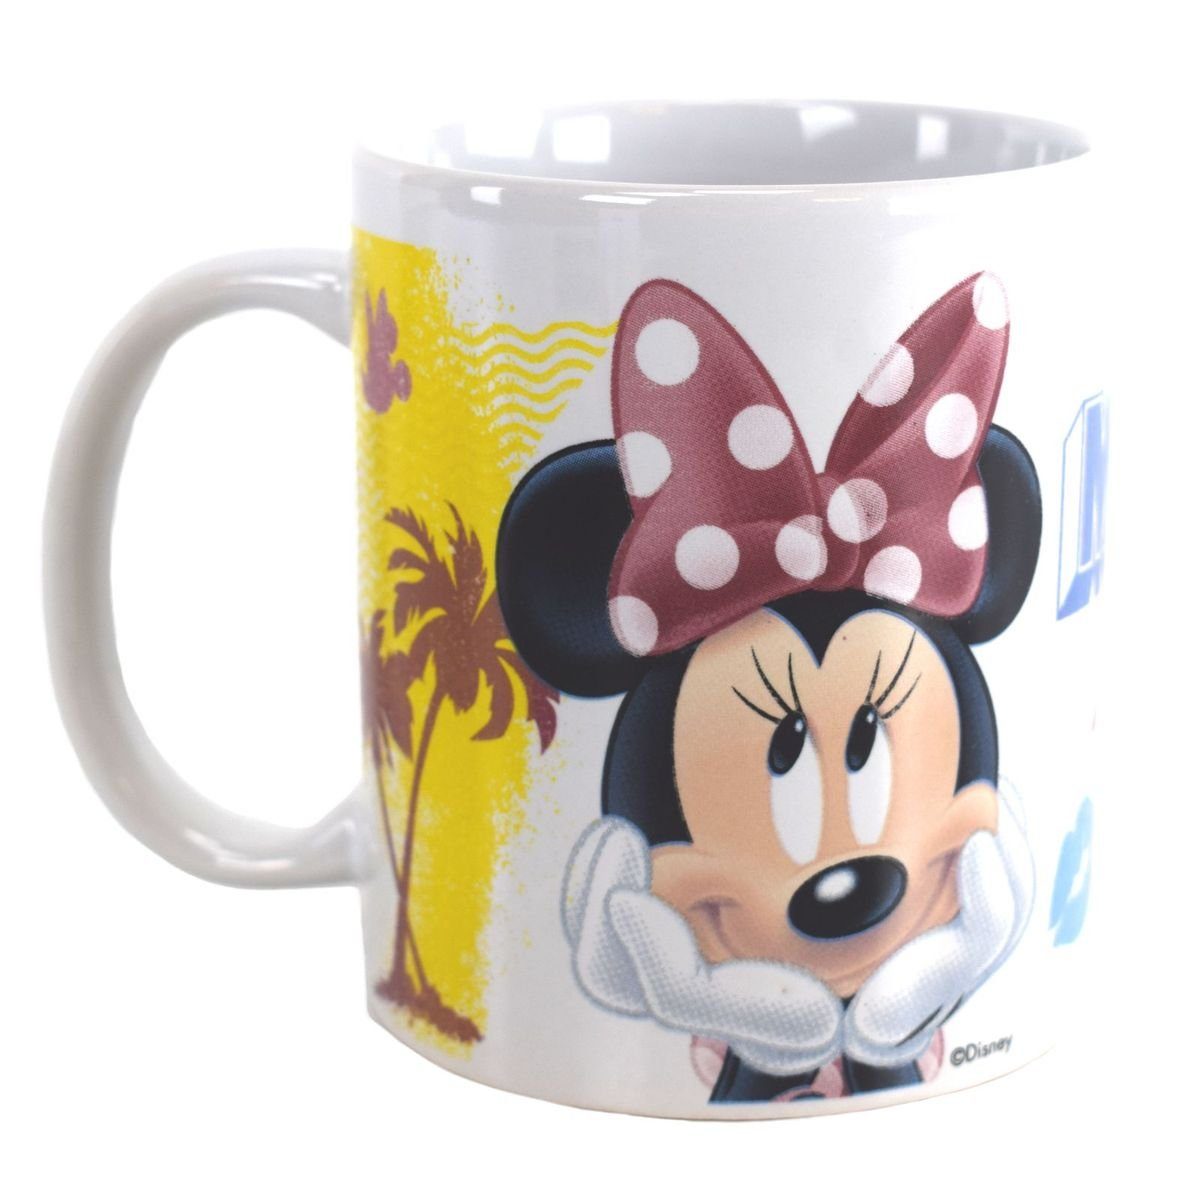 Disney Minnie Mouse Stor Tasse Tasse mit Minnie Mouse Motiv in Geschenkkarton ca. 325 ml Kindertasse, Keramik, authentisches Design